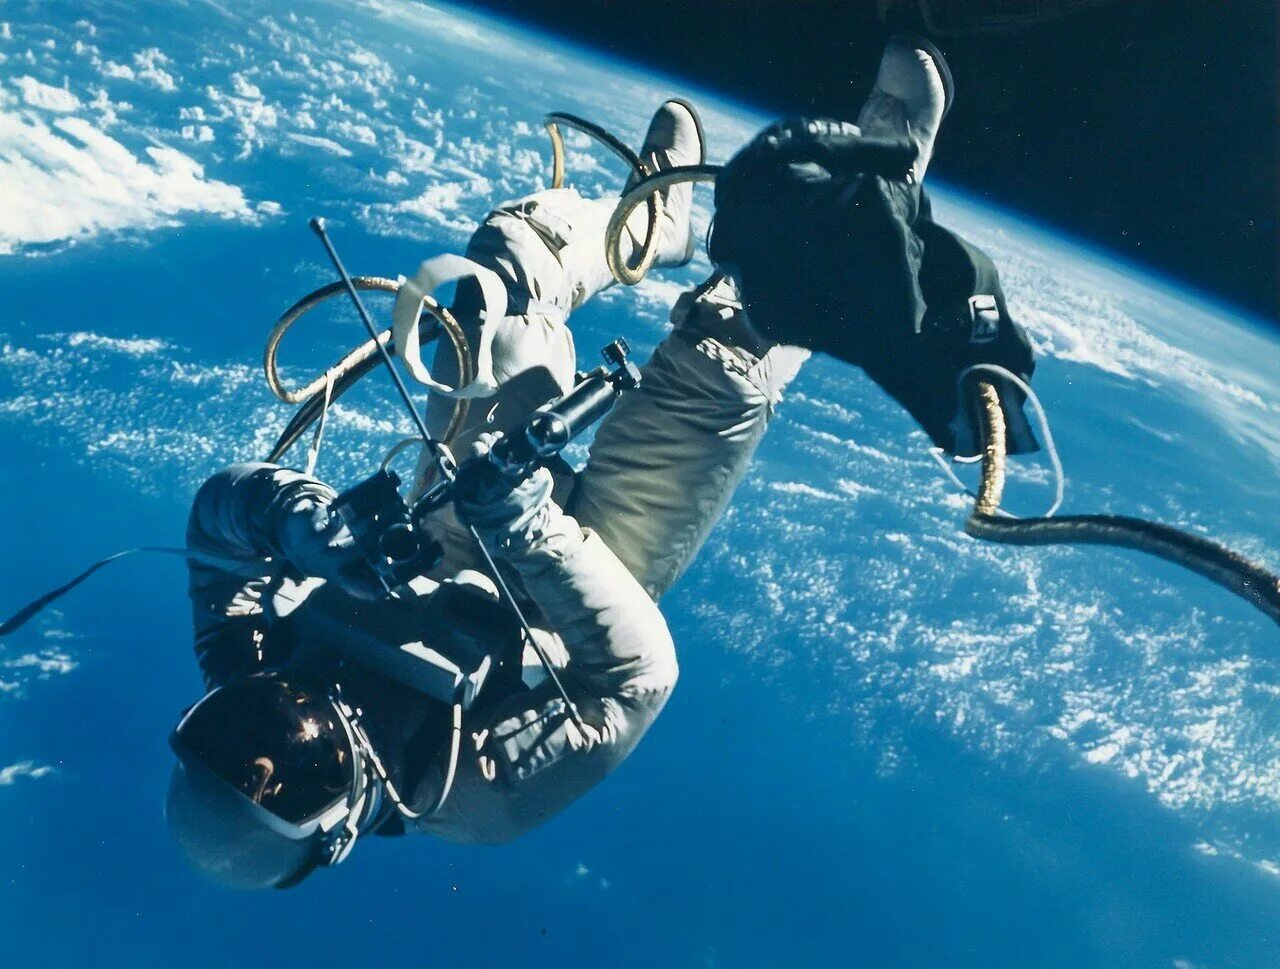 Самый длительный космический полет. Человек в открытом космосе. Космонавт в космосе.